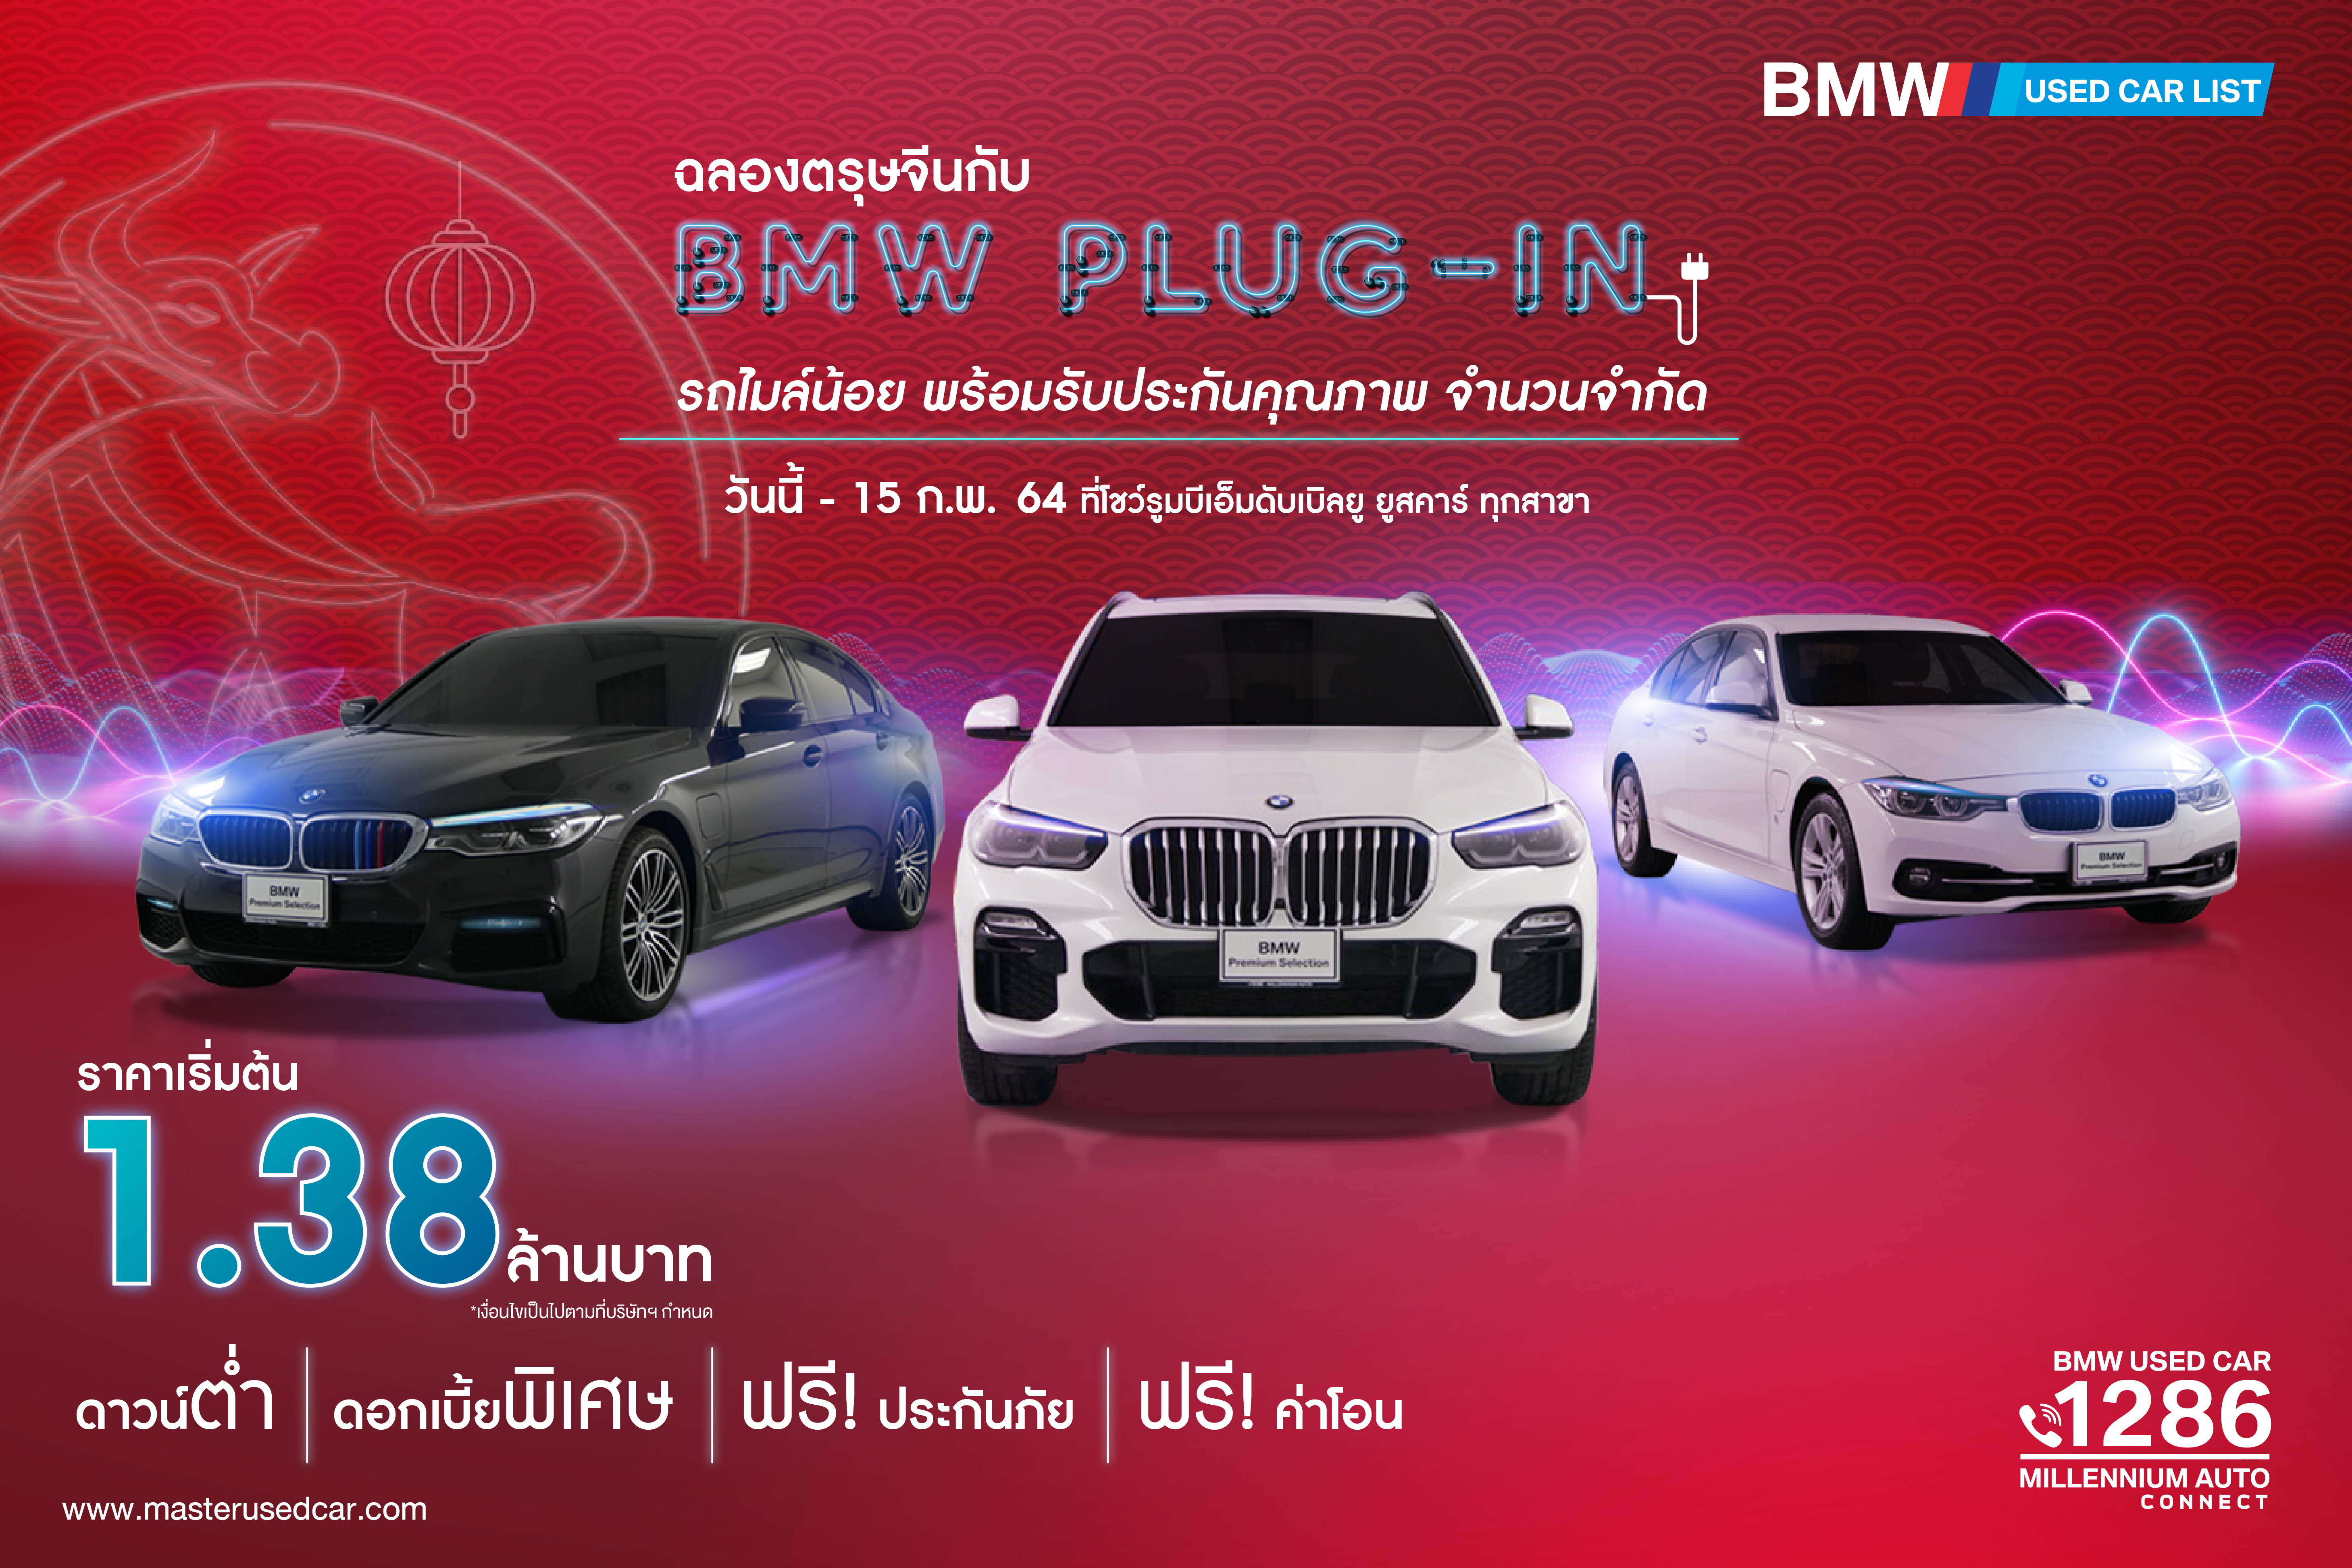 ฉลองตรุษจีน!! กับรถ BMW Plug-in ไมล์น้อย ราคาเริ่มต้น 1.38 ล้าน